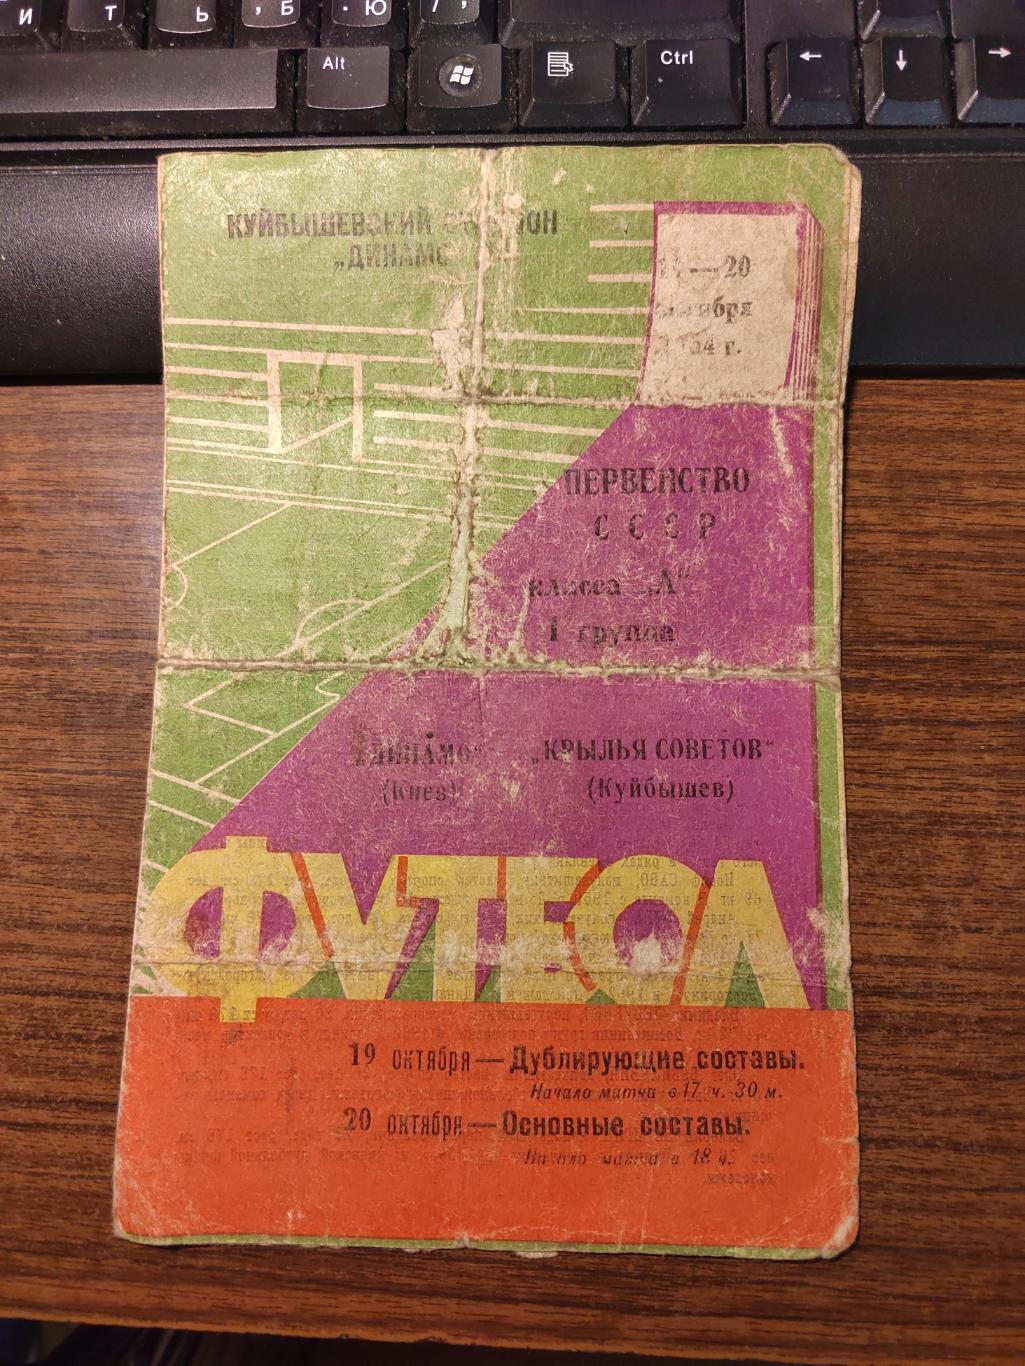 Футбол Программа Крылья Советов - Динамо Киев 1964